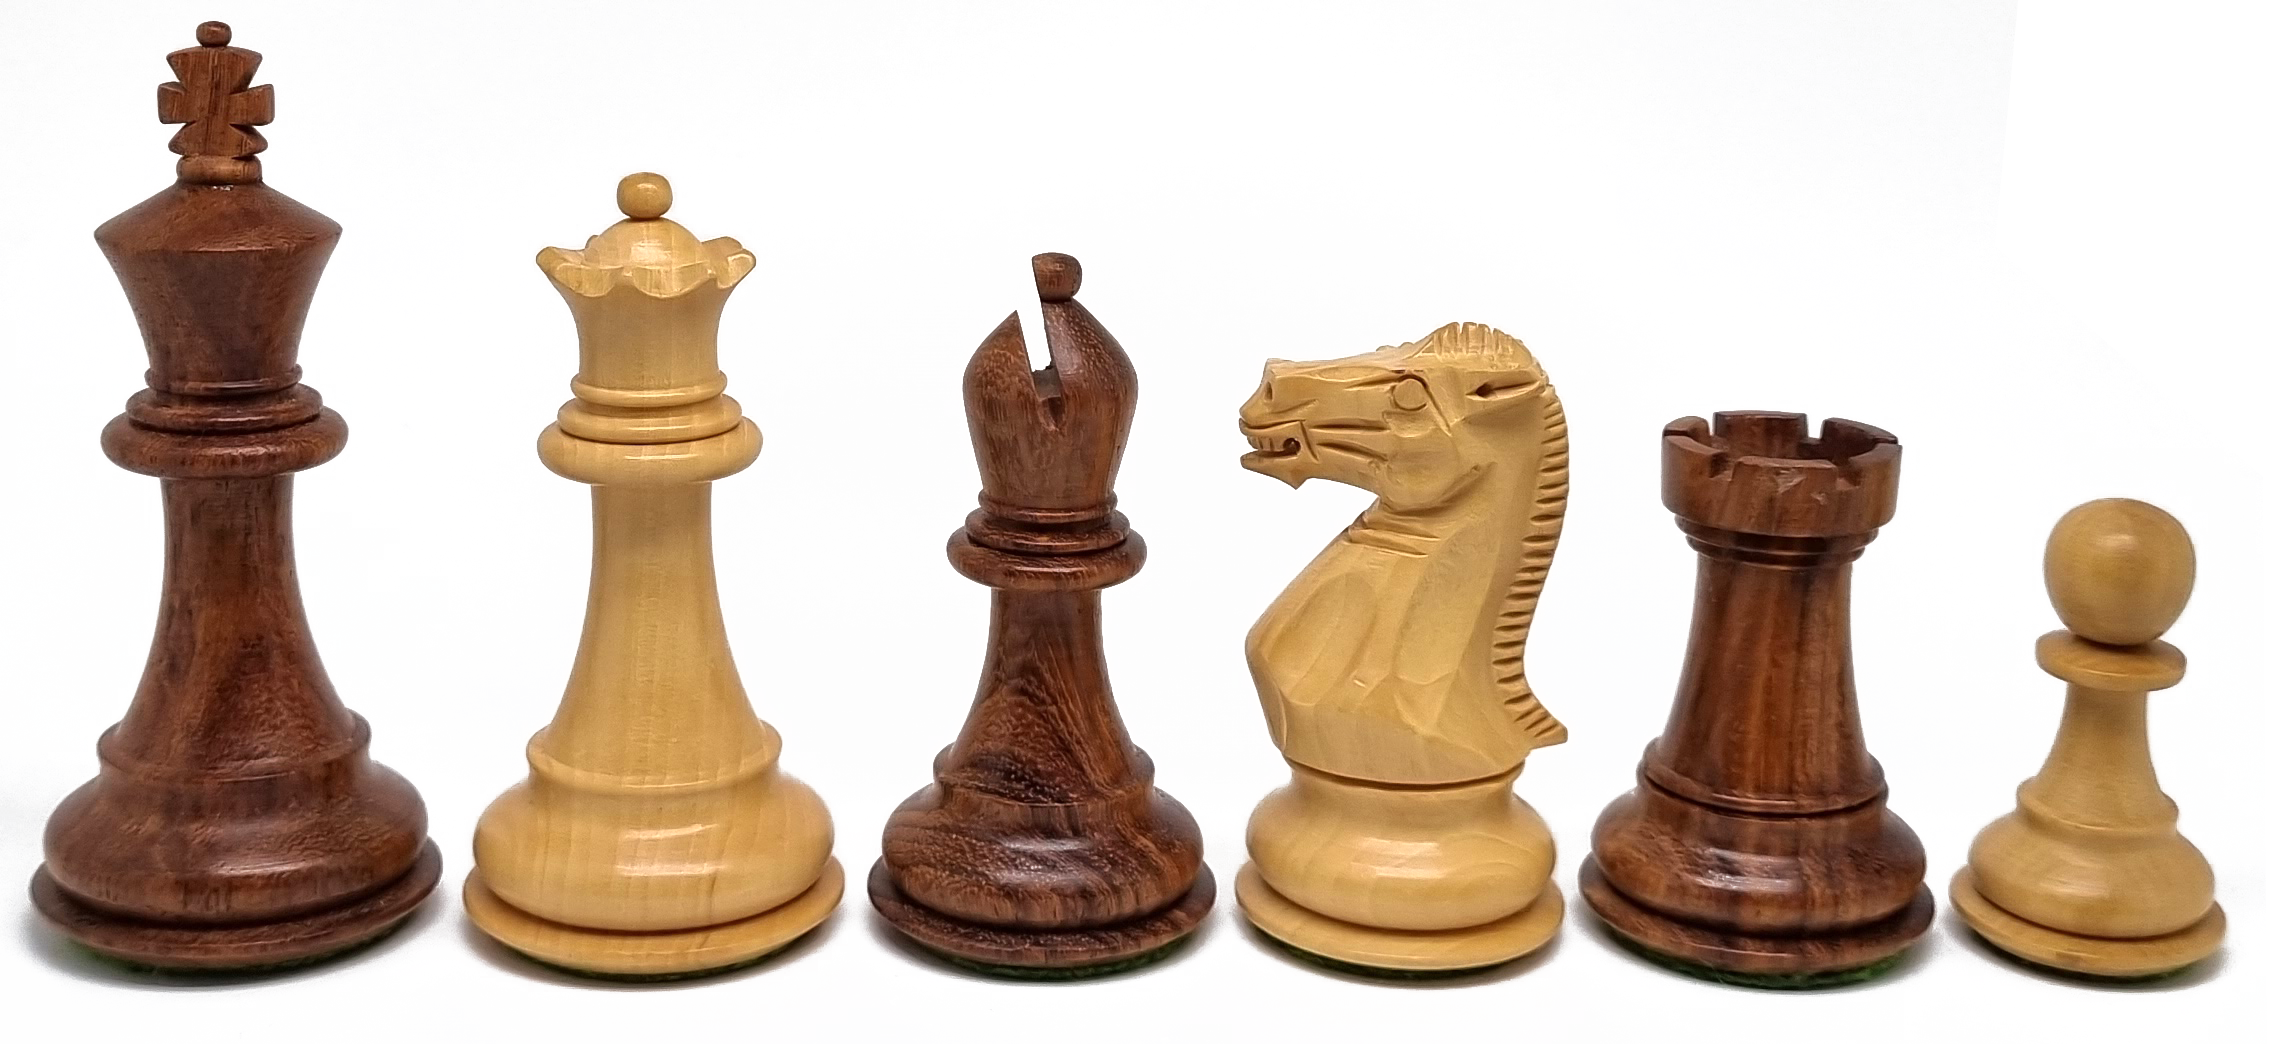 VI/ Piezas de ajedrez modelo Stallion "3,50" Shisham